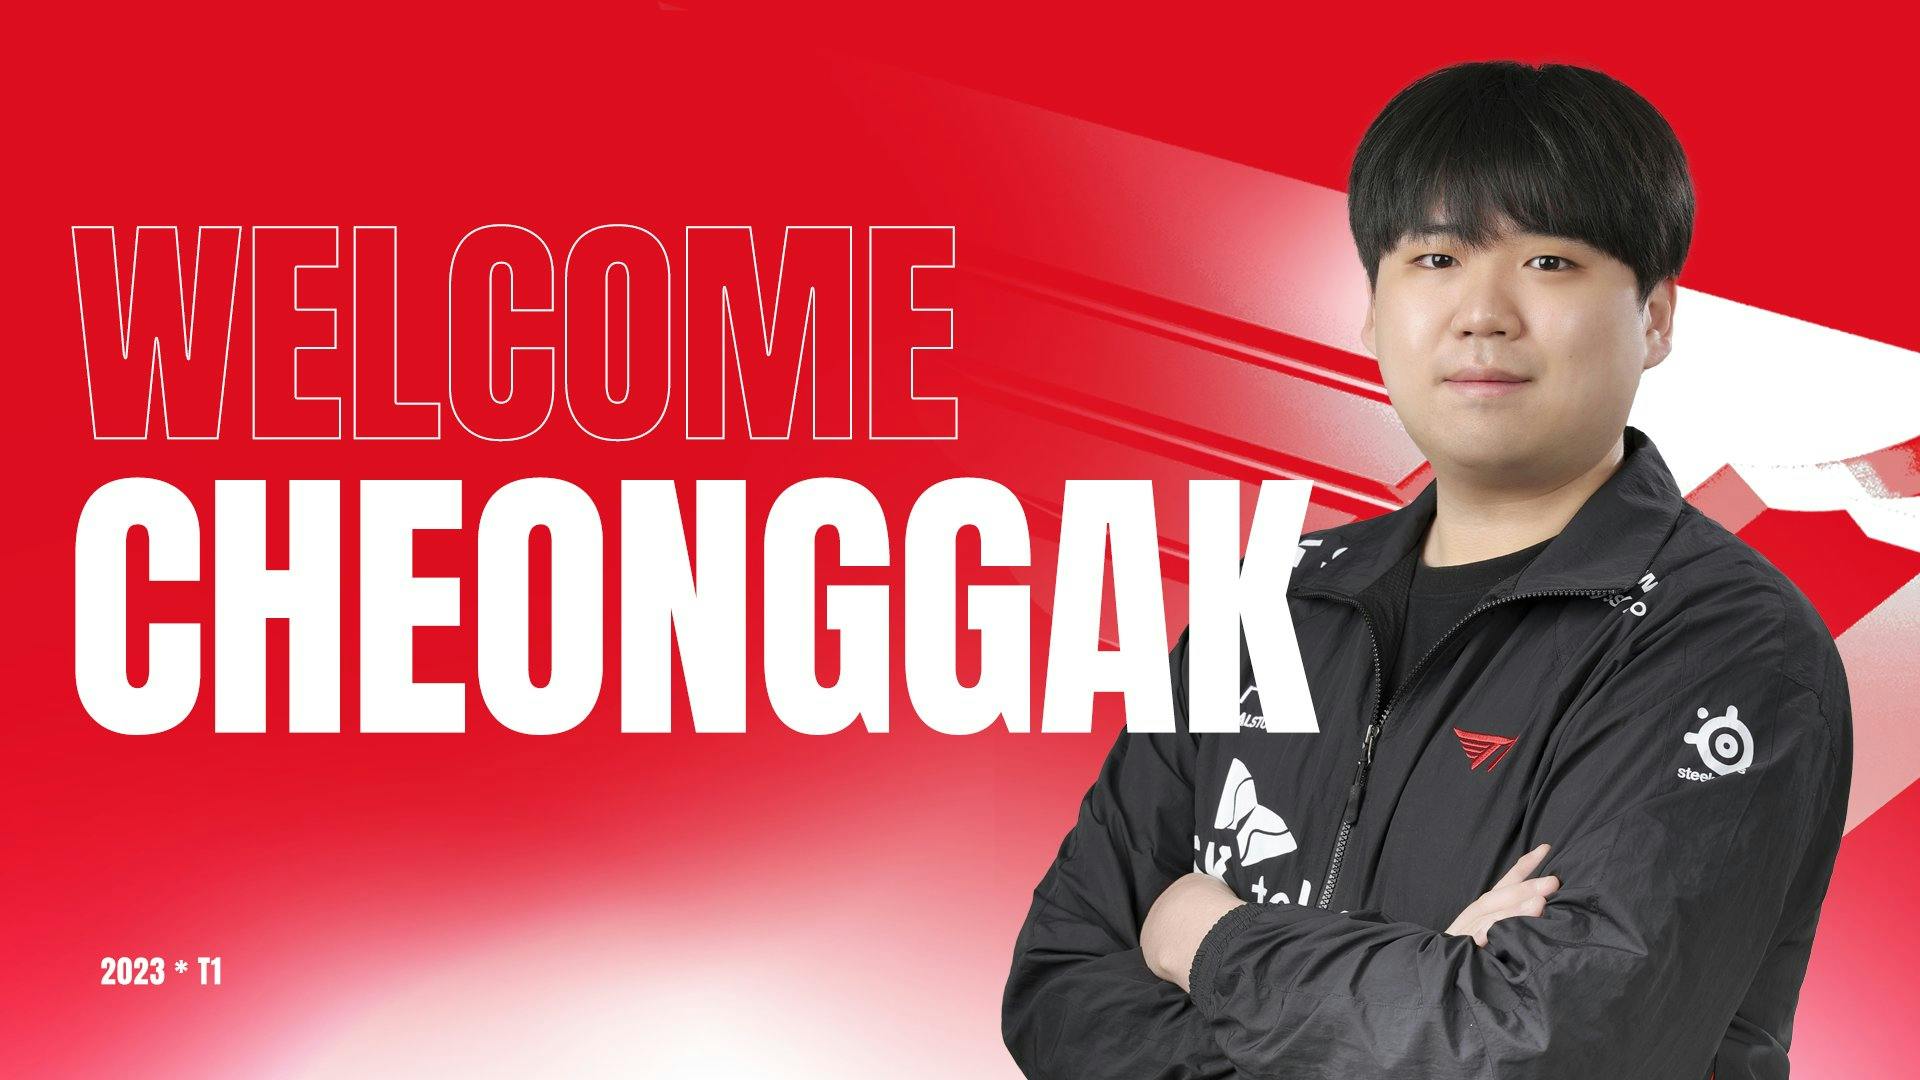 T1 announce CheongGak as coach